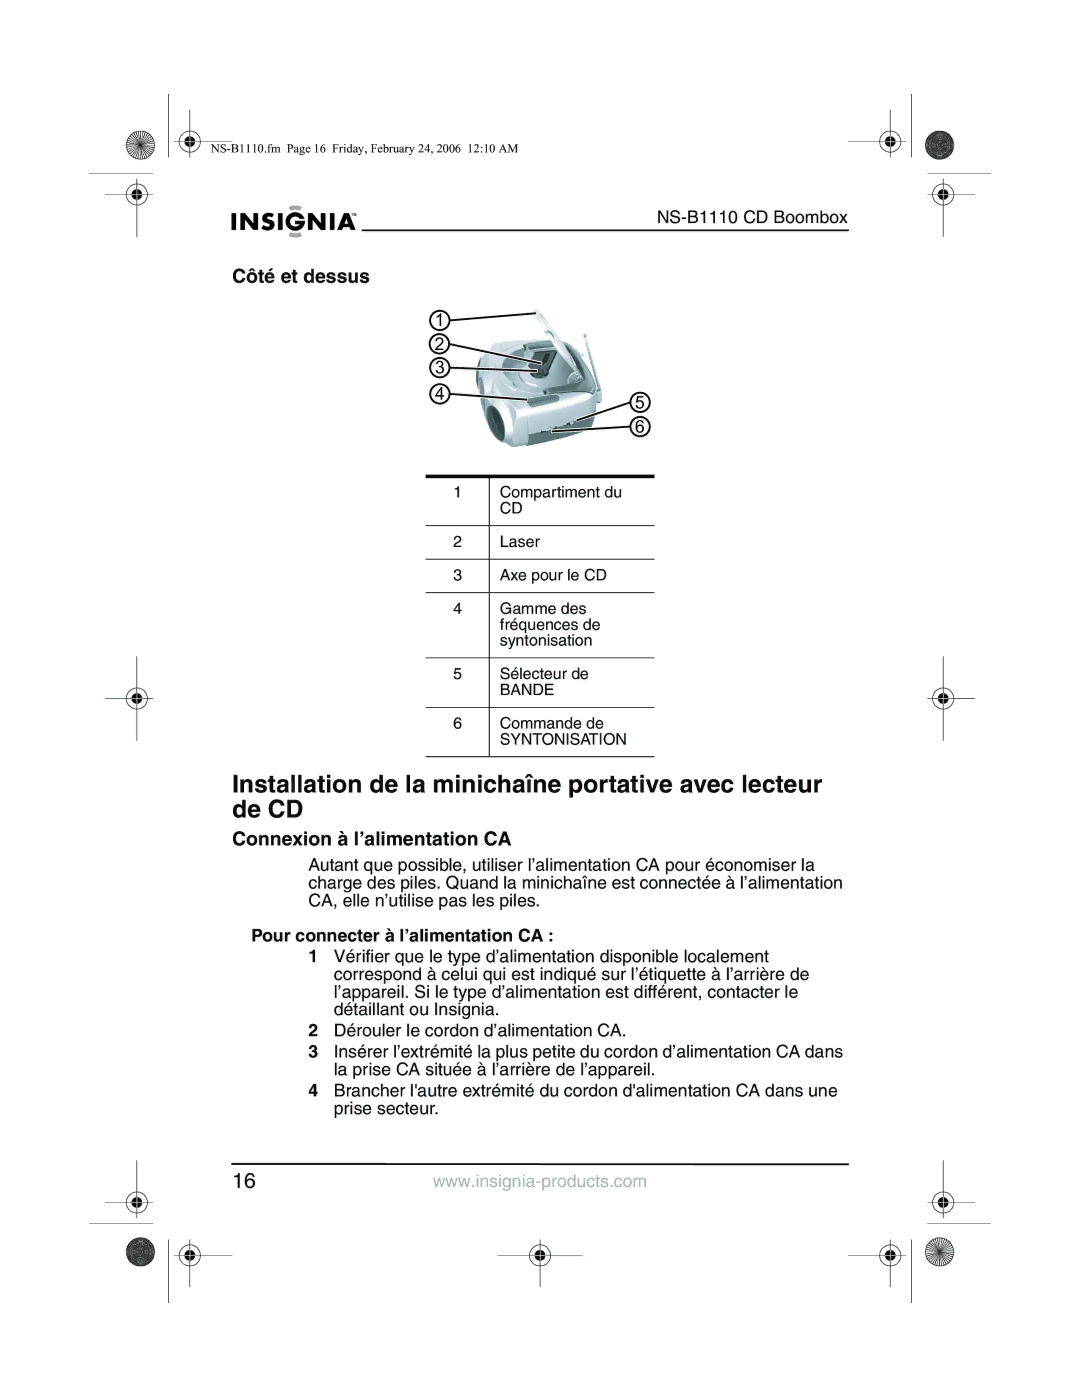 Insignia NS-B1110 manual Installation de la minichaîne portative avec lecteur de CD, Côté et dessus 